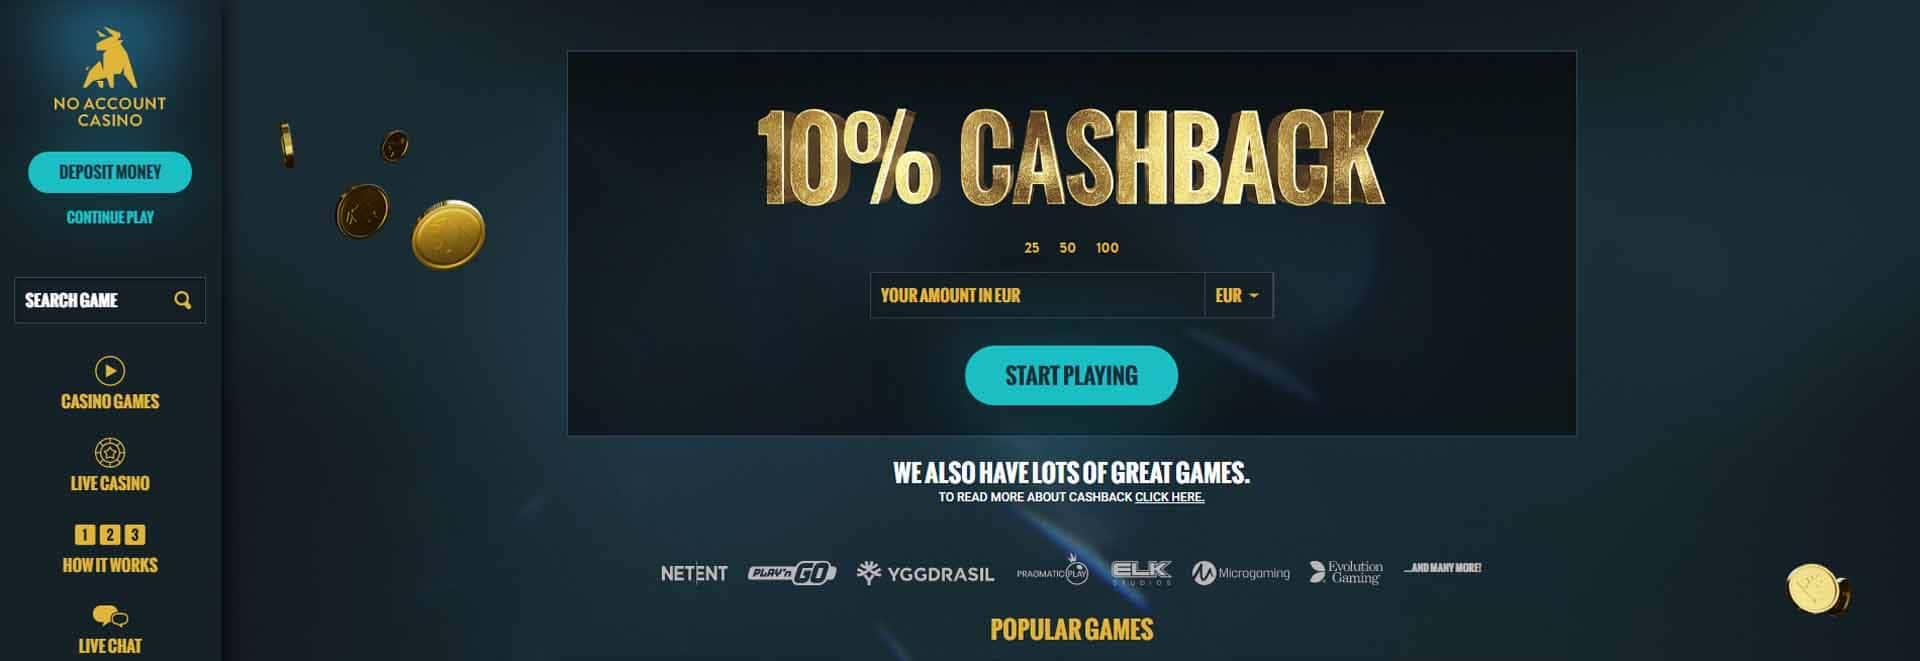 No Account casino homepage